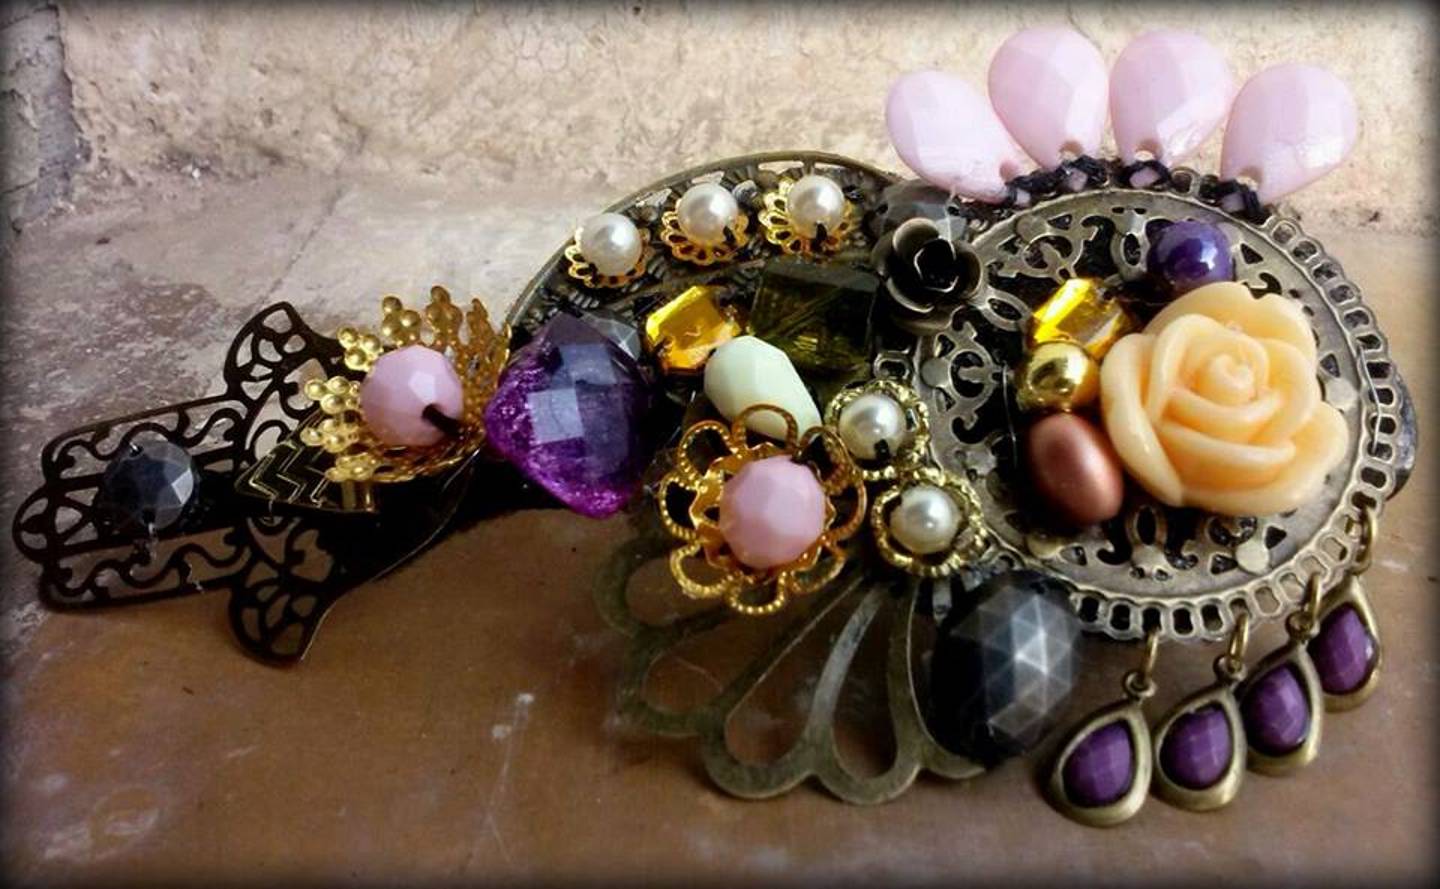 Leopoldina accesorios / Jewellery